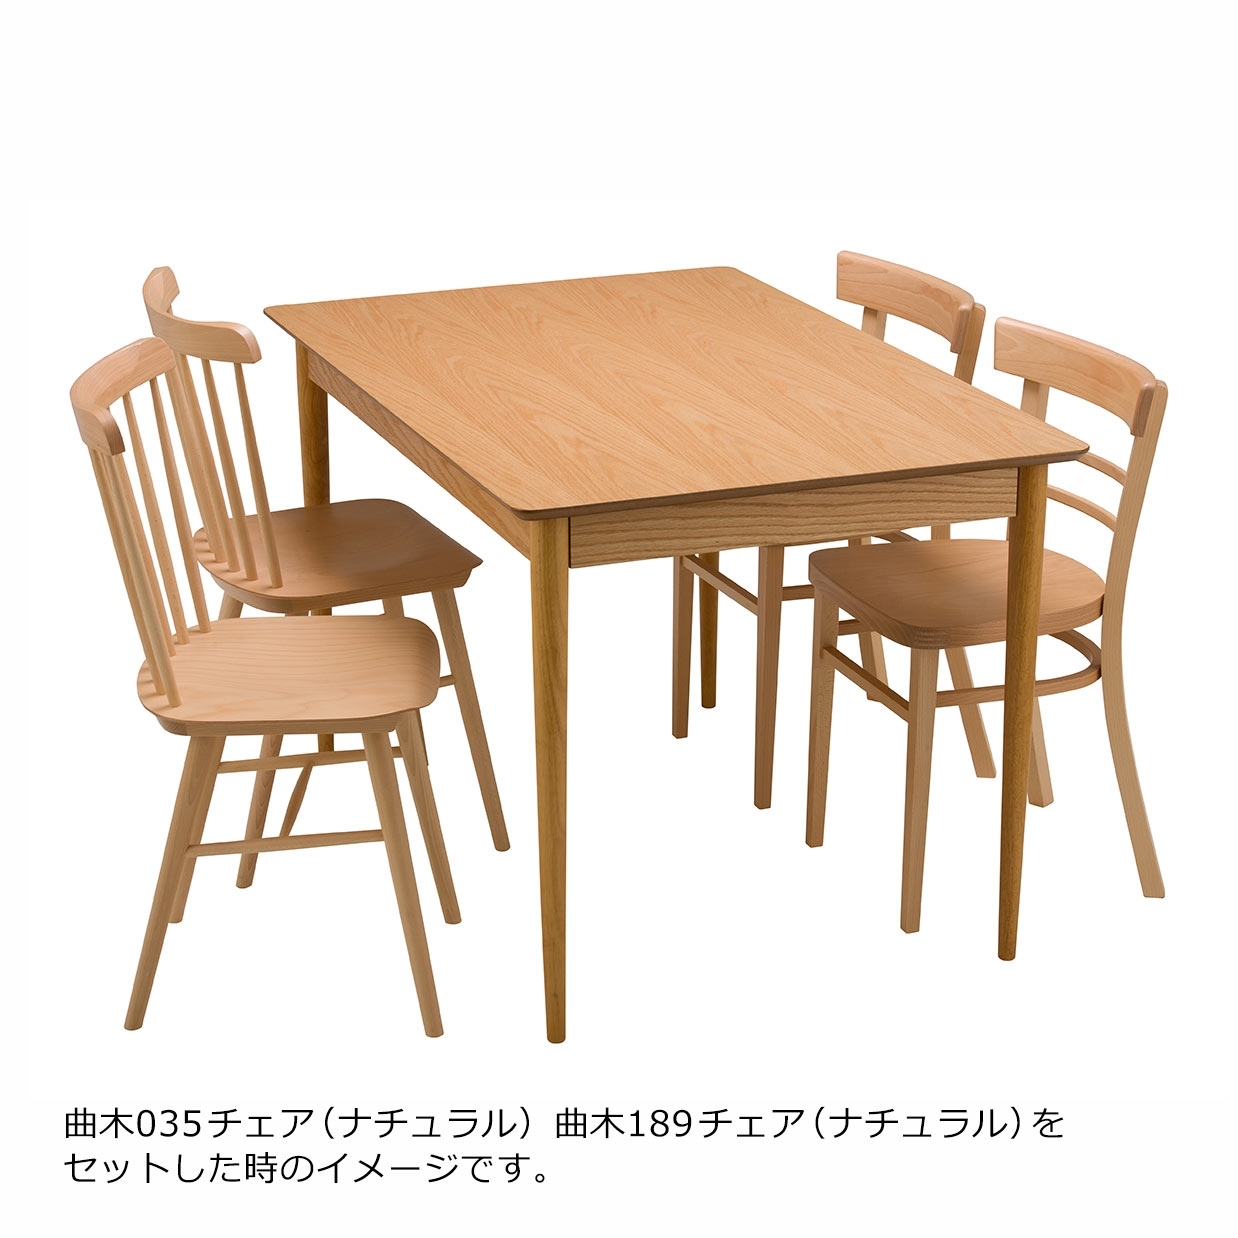 ダイニングテーブルBF6125R【送料無料】オーク